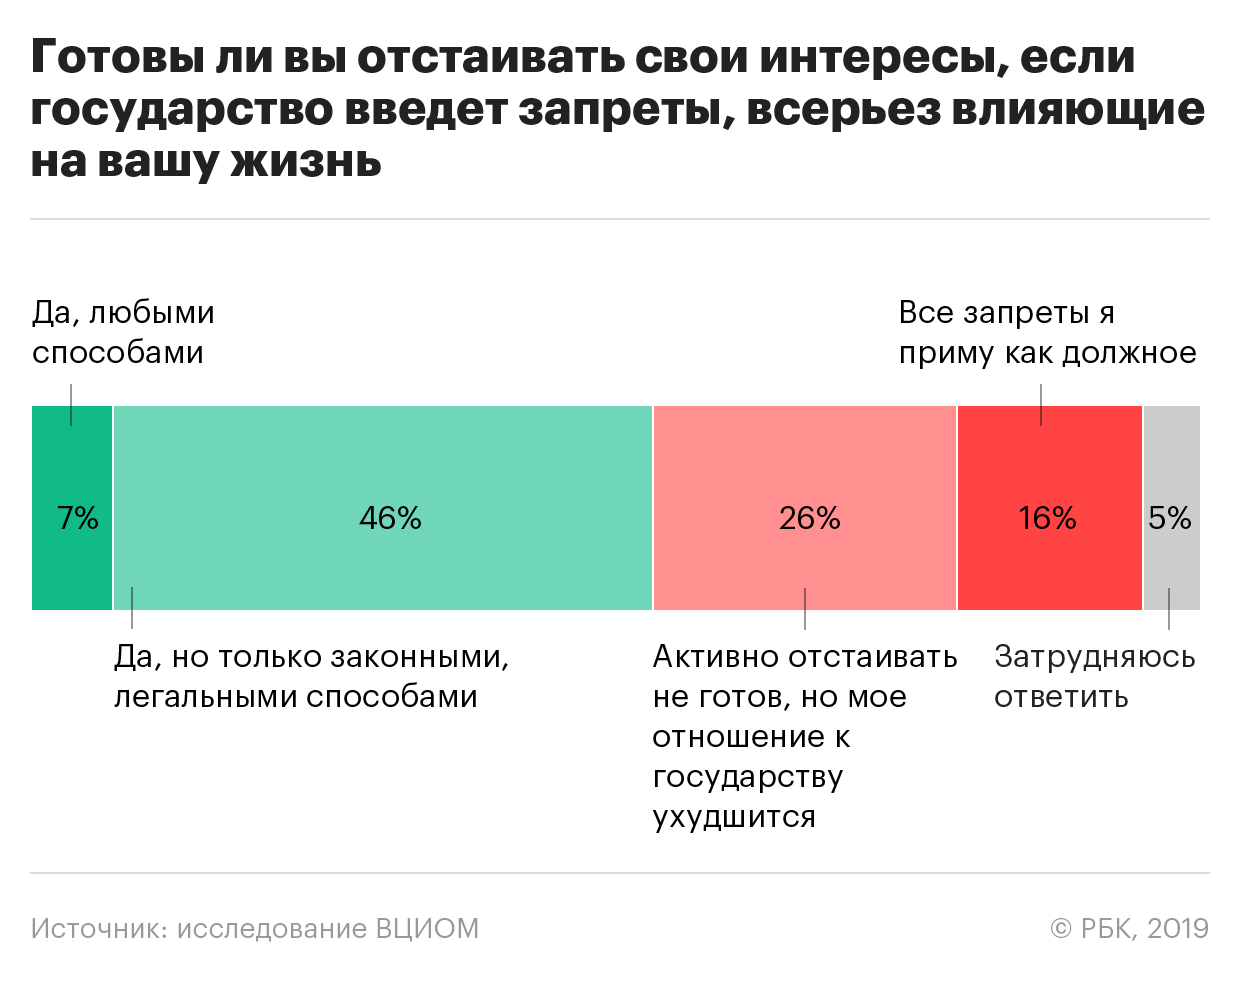 Более 15% россиян заявили о готовности принять любые запреты государства